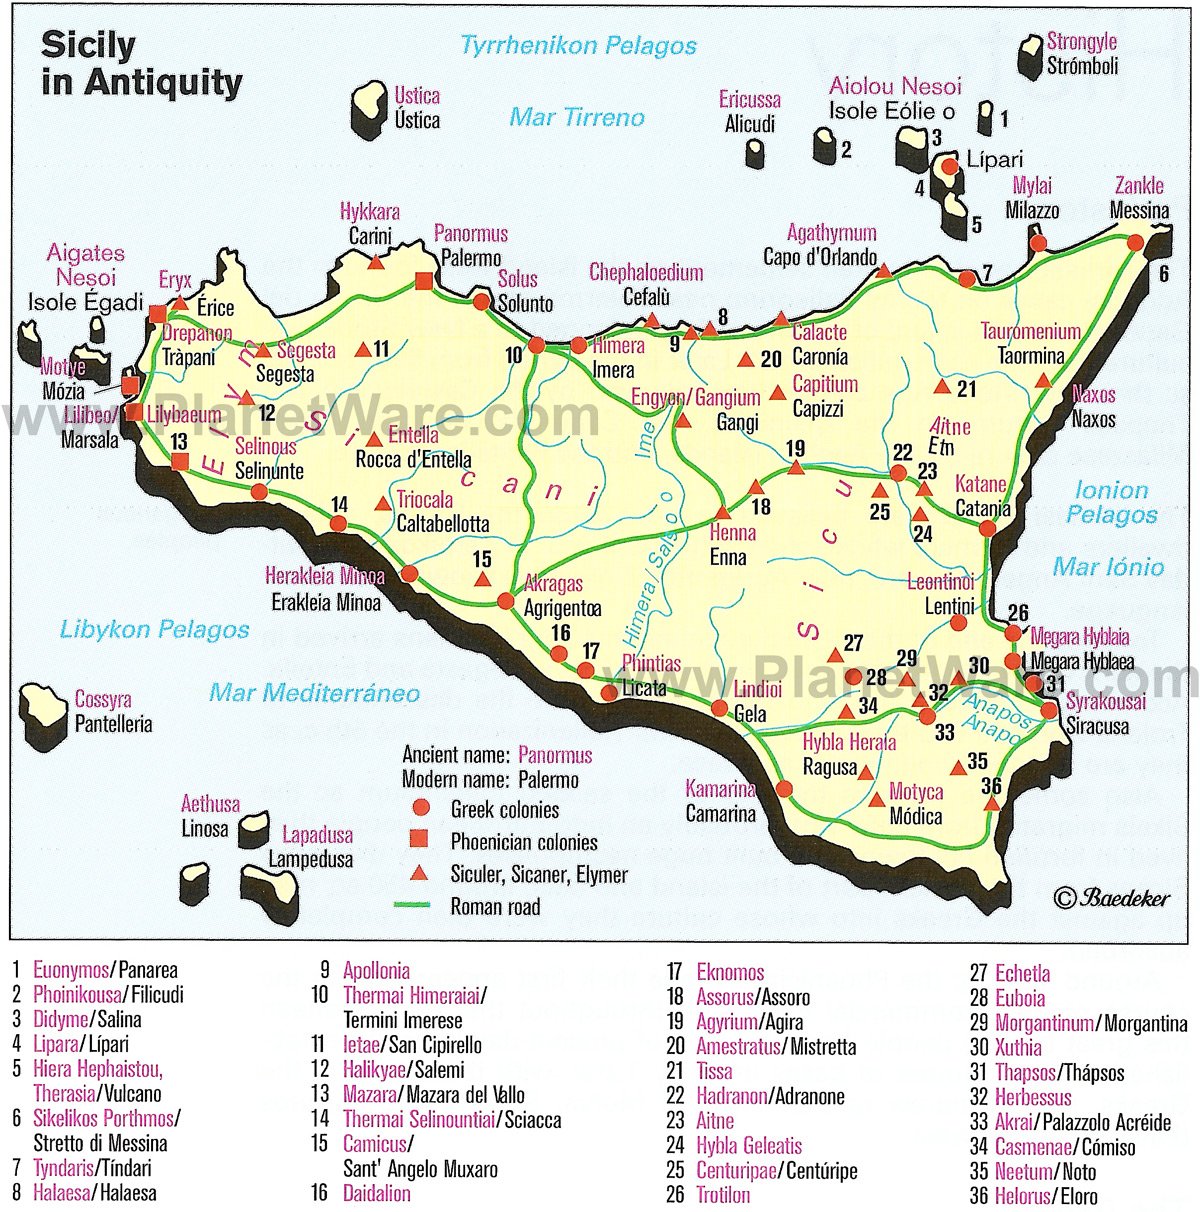 Mappa Sicilia nell'antichità - Attrazioni turistiche